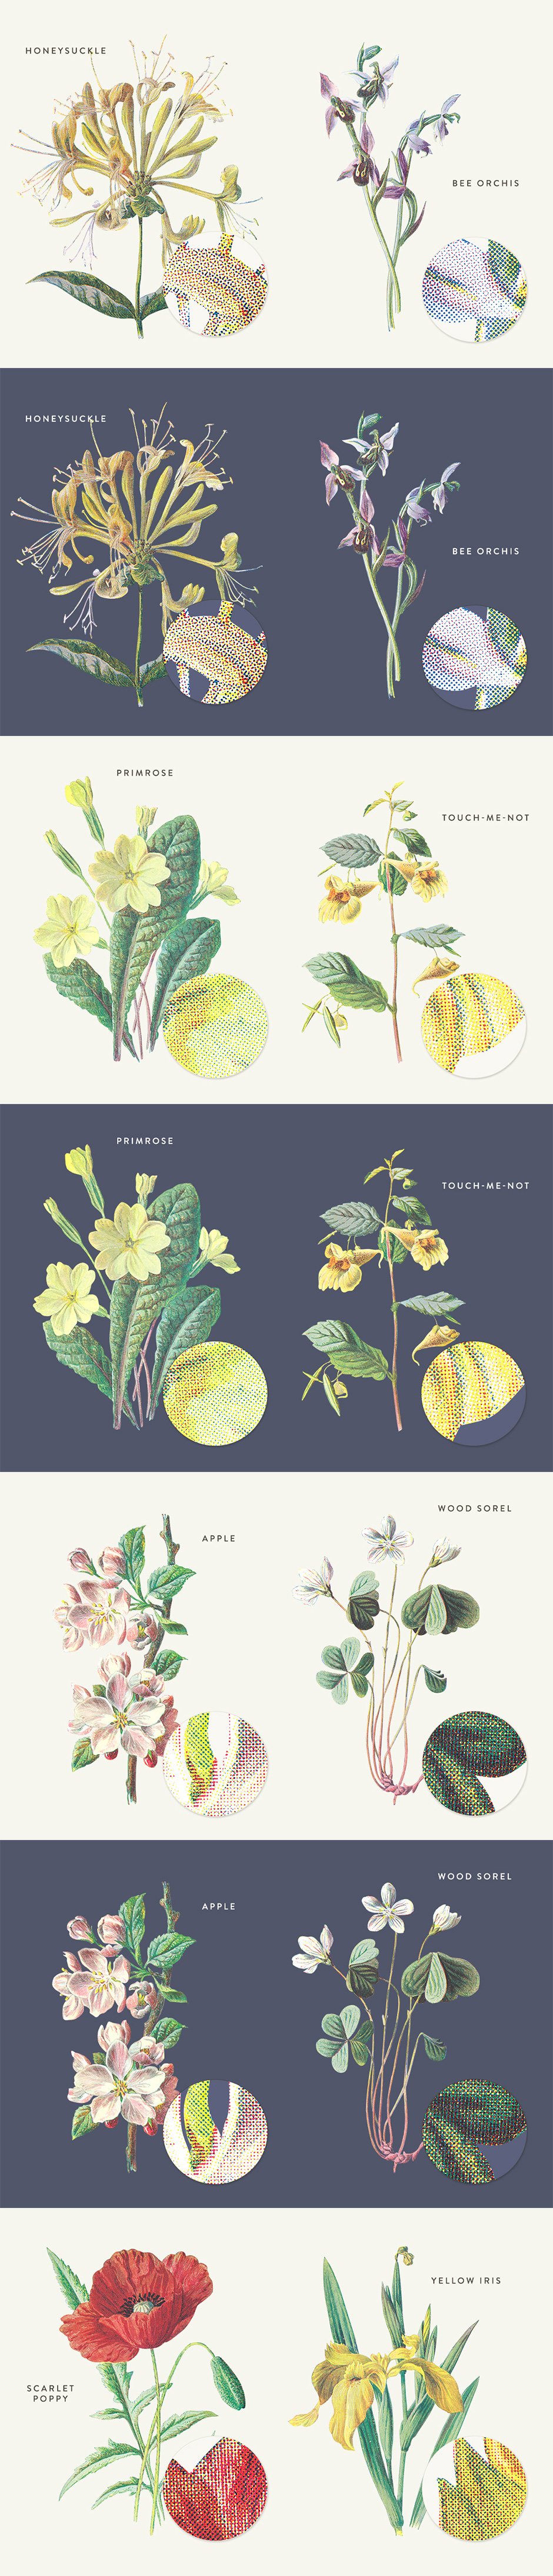 Antique Botanica Illustrations